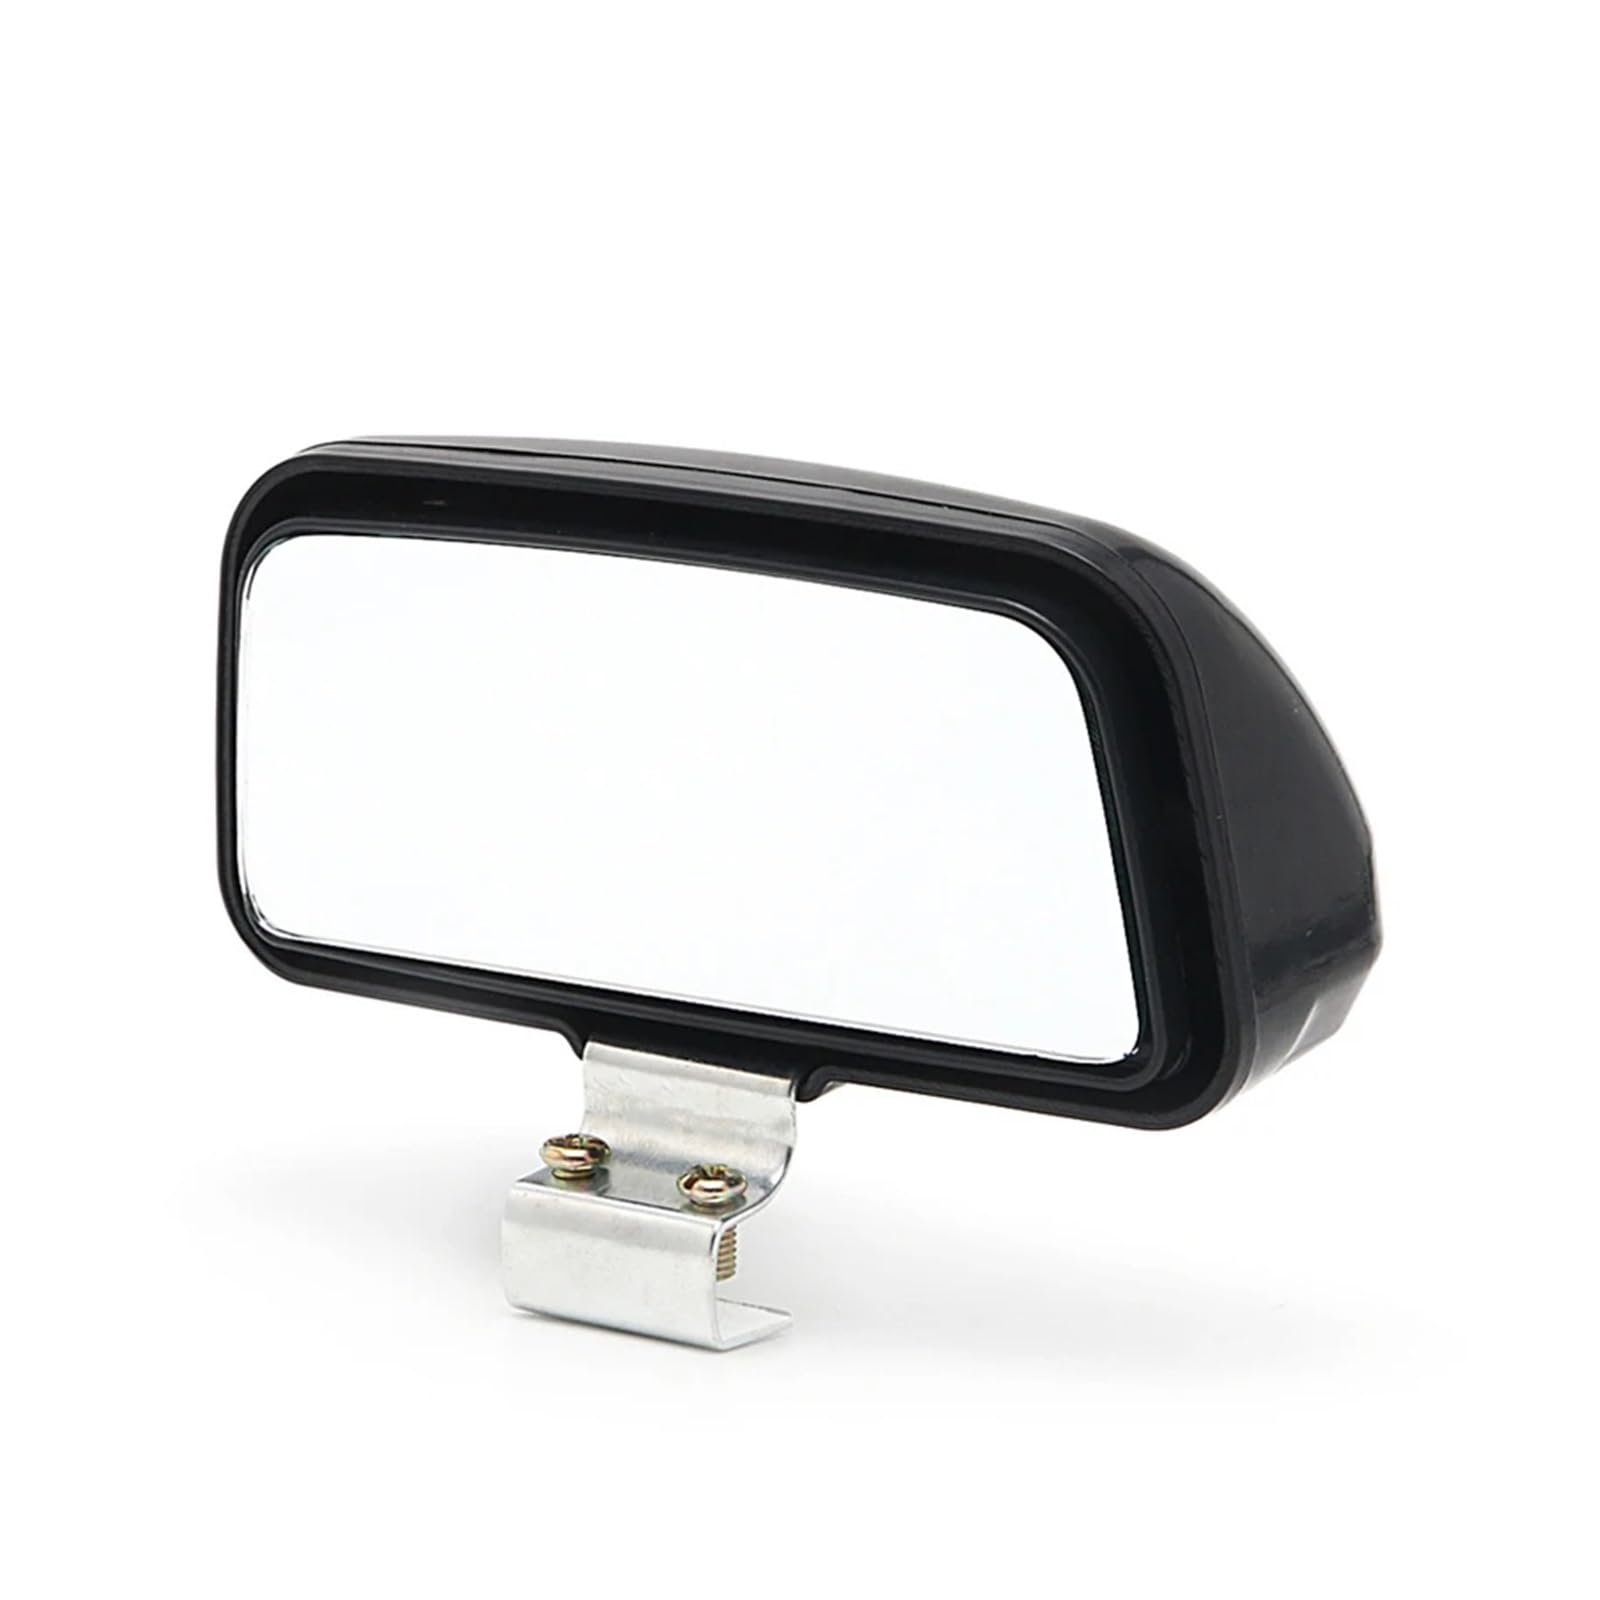 Umkehrlinse Rückfahrglas Spiegel 1 Stück Auto Universal Verstellbarer Weitwinkelspiegel Rückansicht Toter Winkel 11 X 7 Cm Außenspiegel Glas von AWGNTQQ